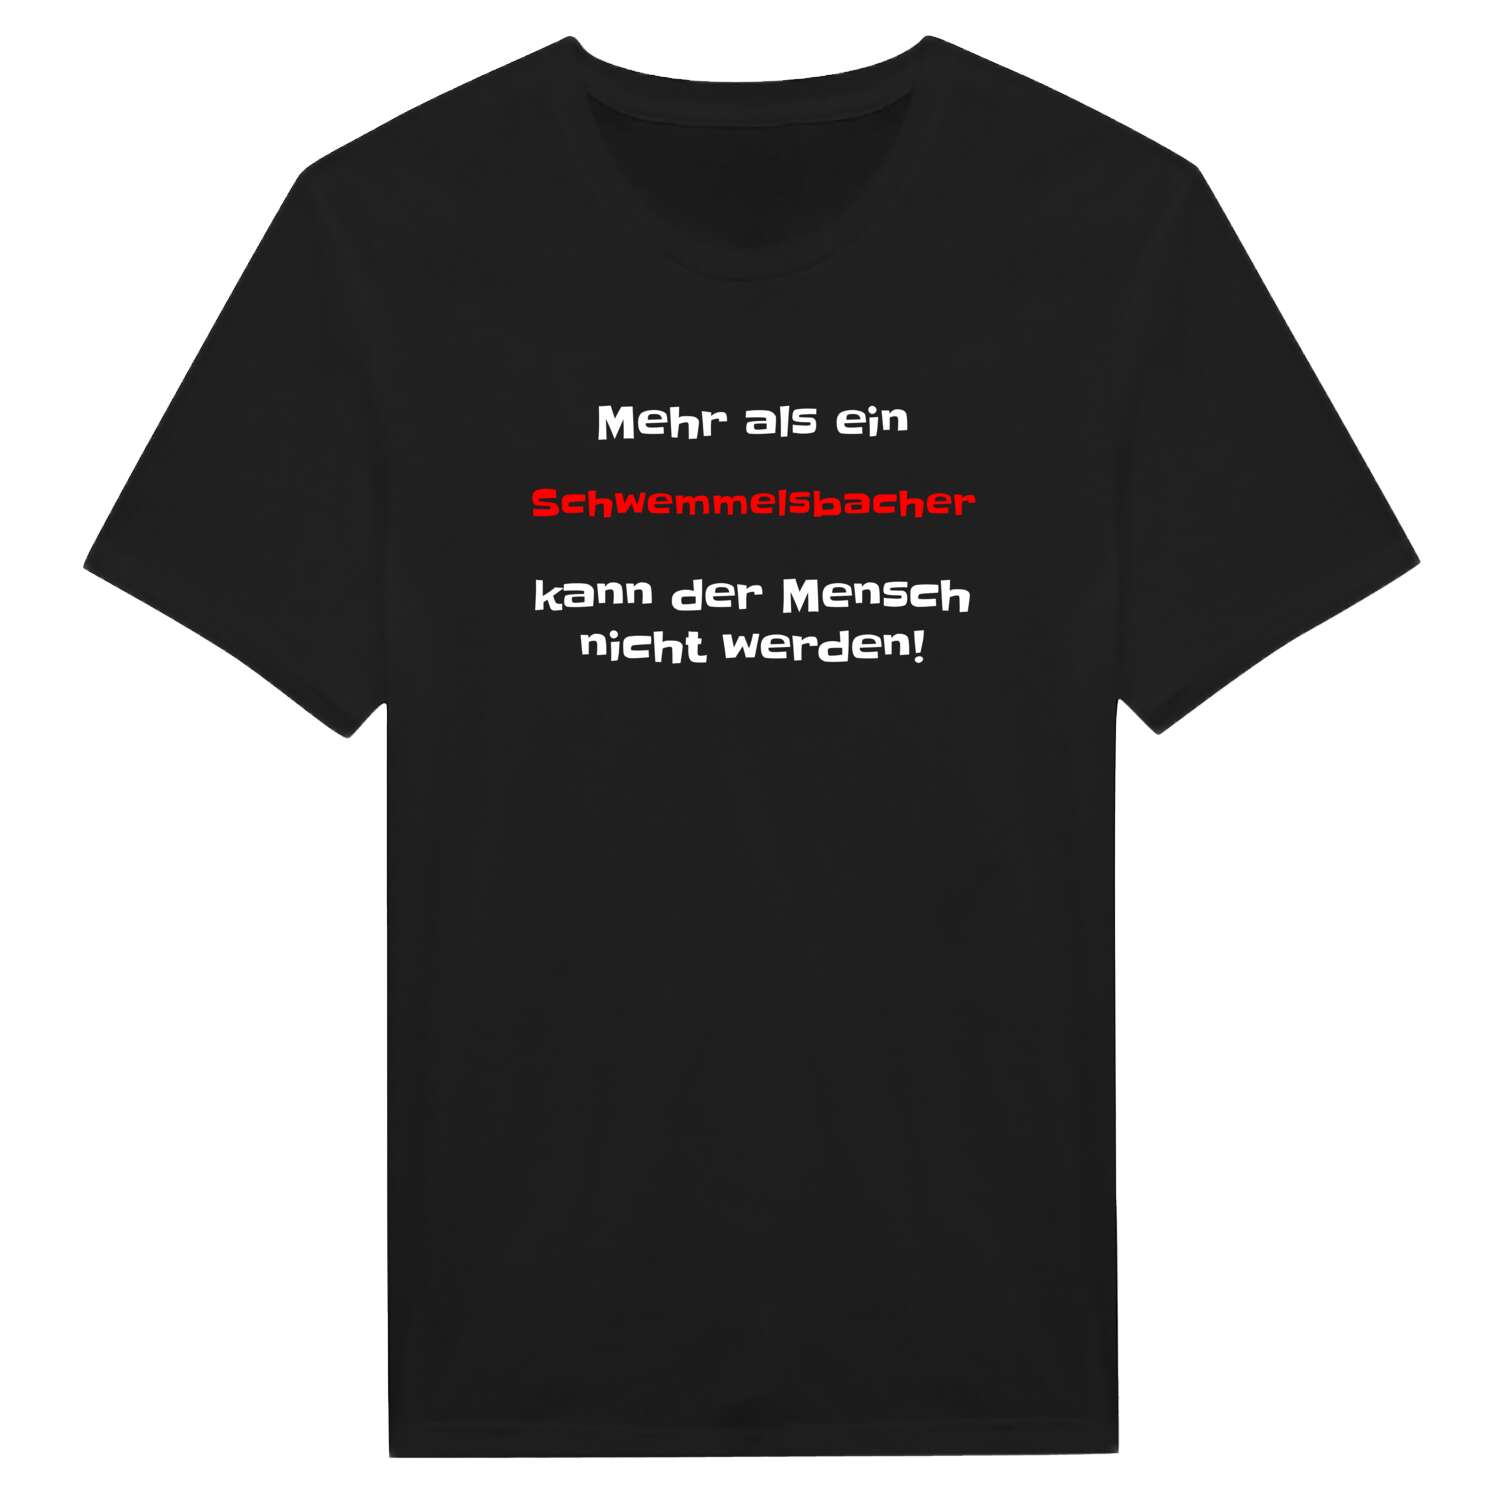 Schwemmelsbach T-Shirt »Mehr als ein«